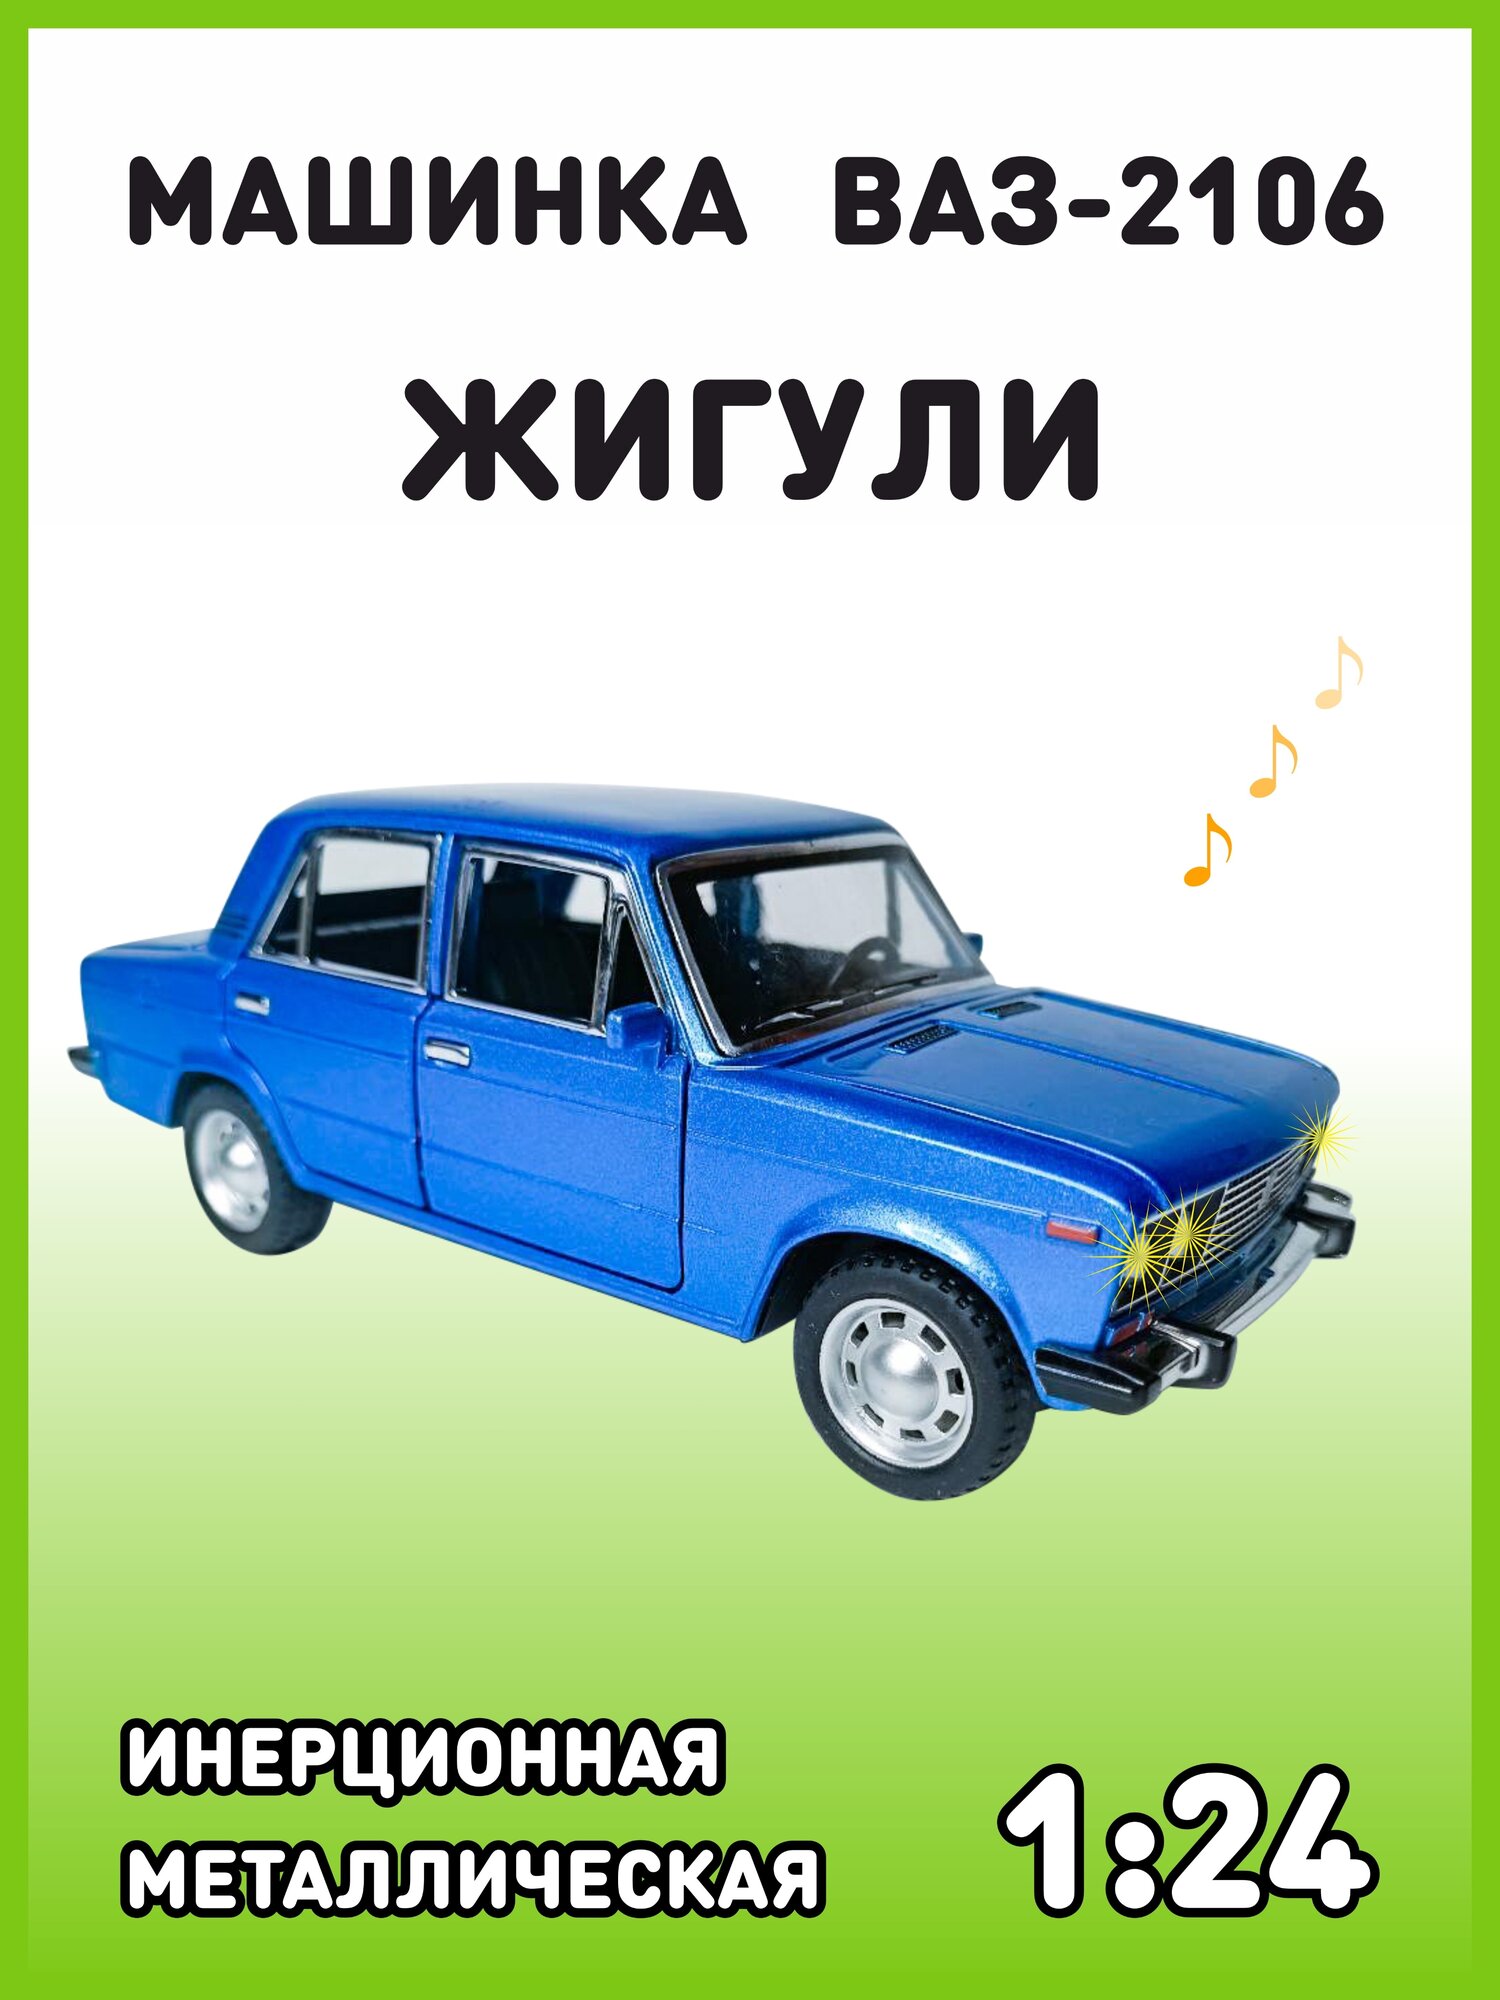 Модель автомобиля Жигули ВАЗ 2106 коллекционная металлическая игрушка масштаб 1:24 синий